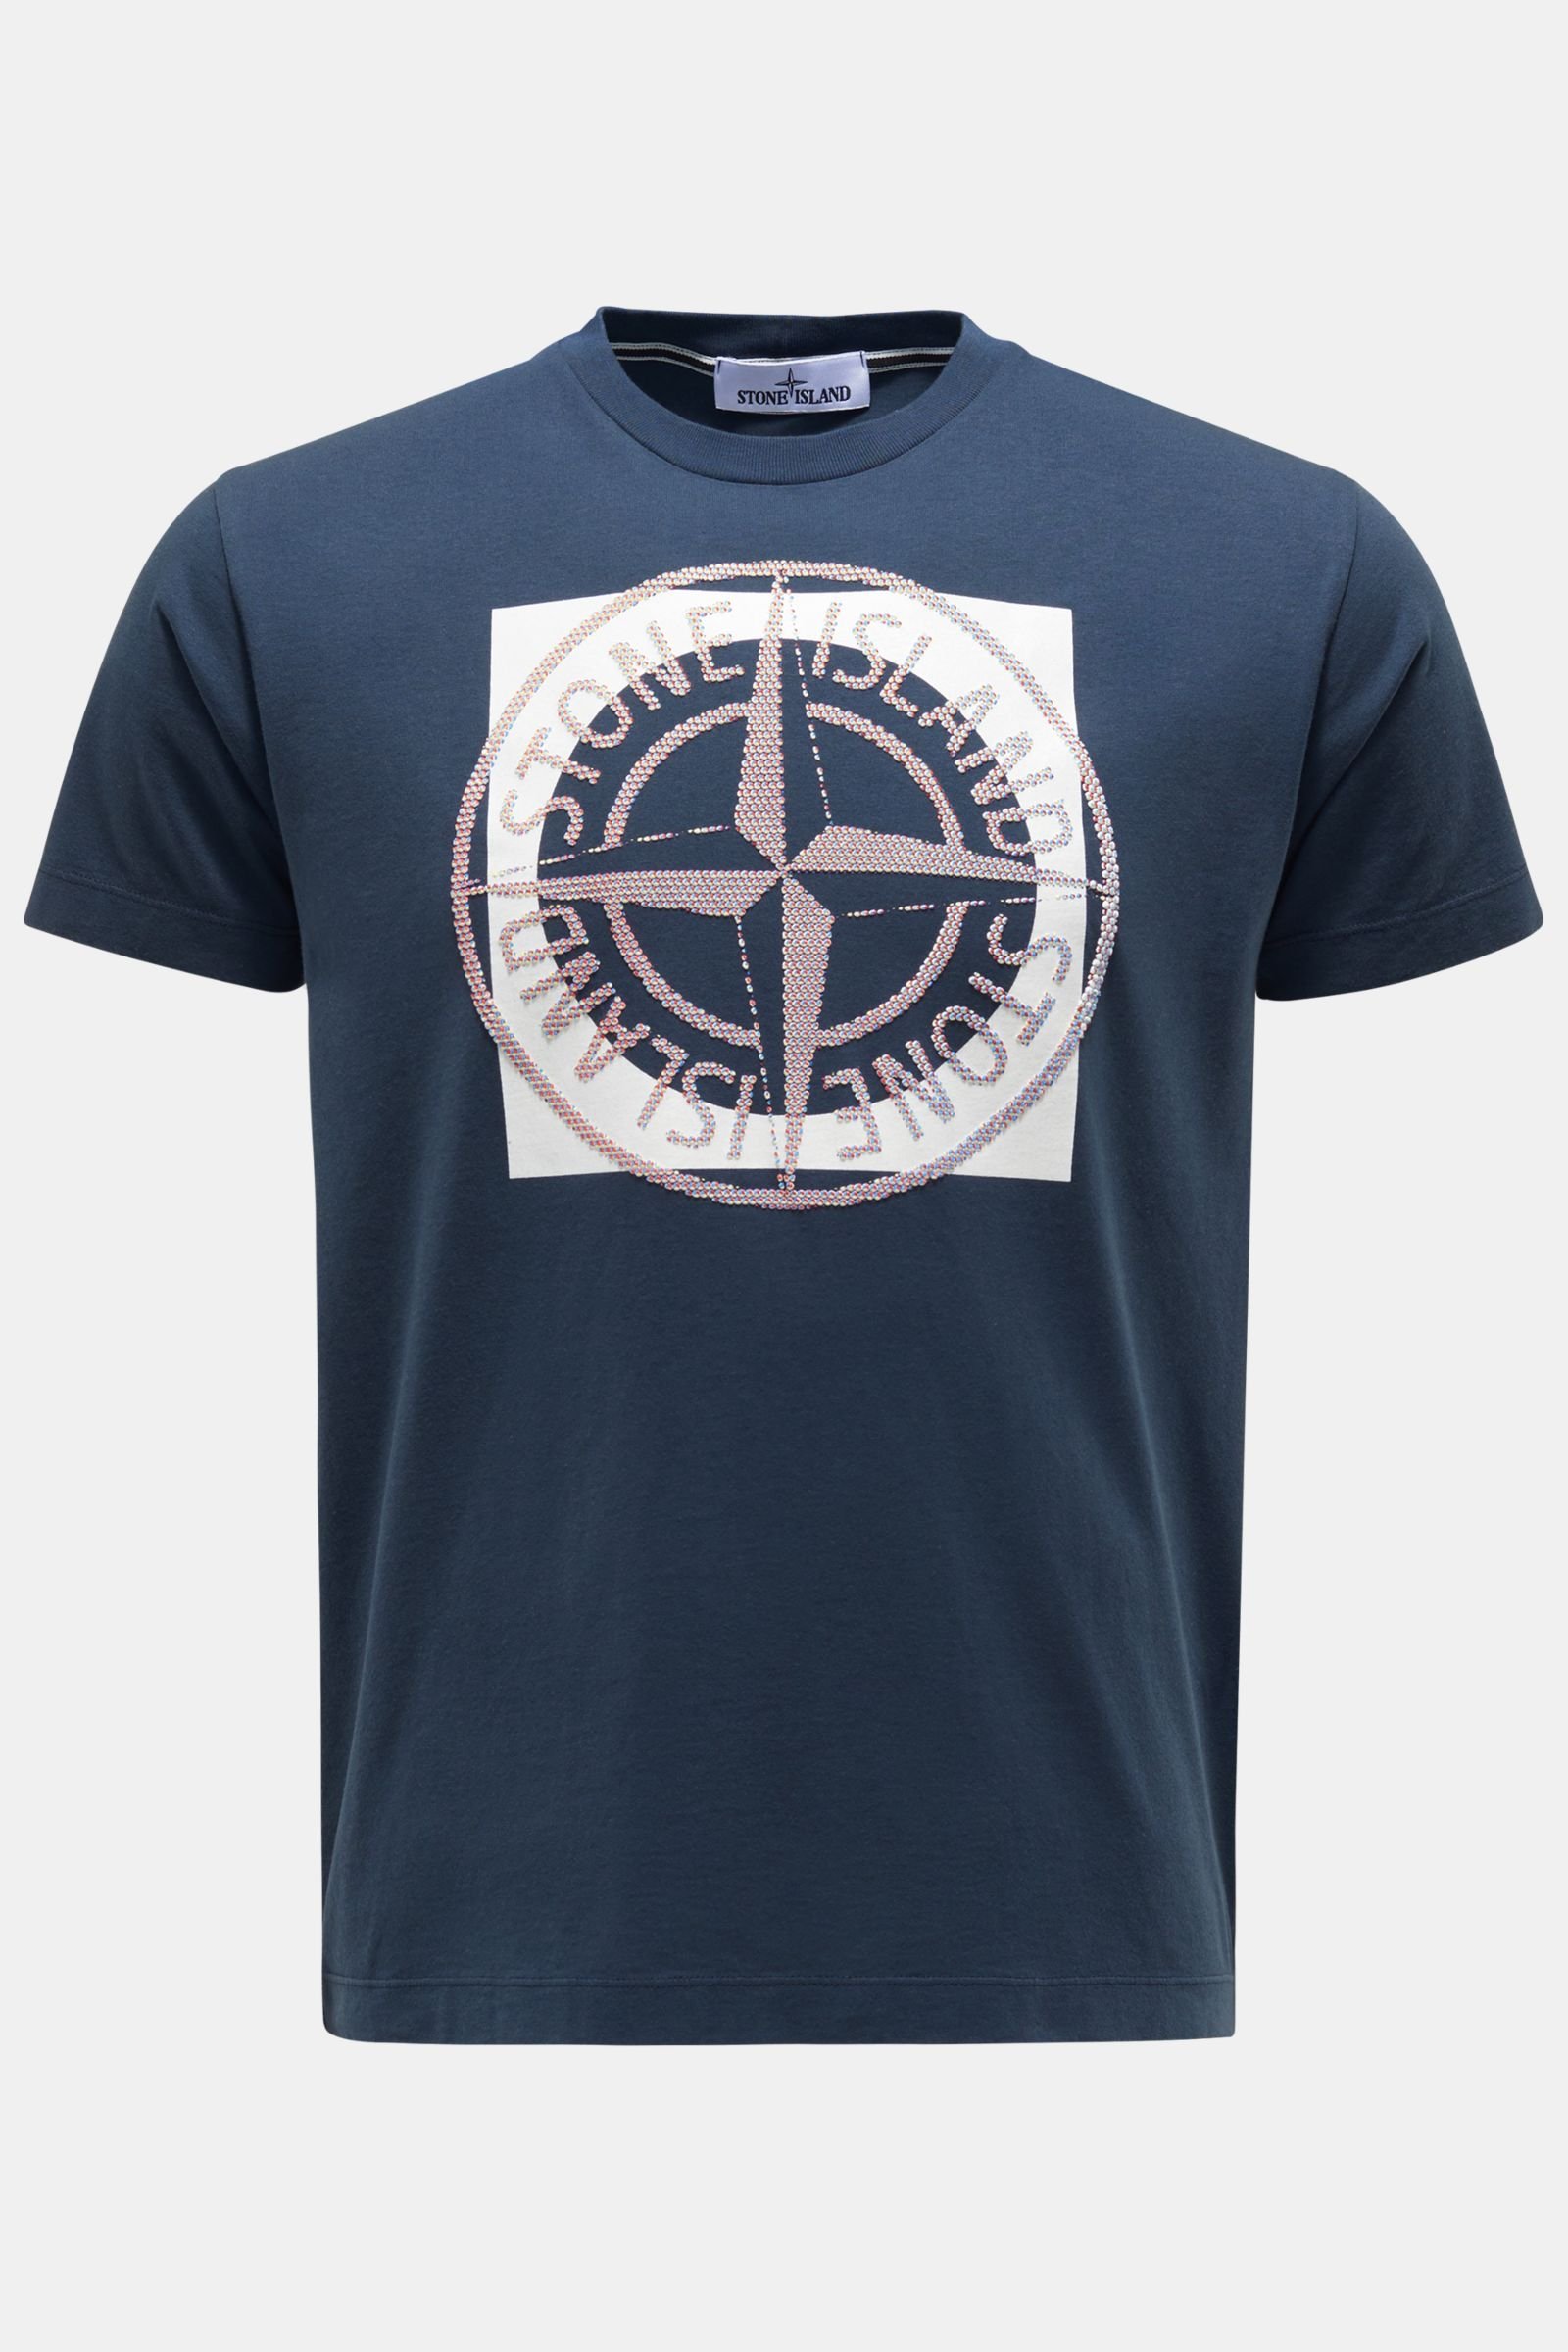 Rundhals T-Shirt navy